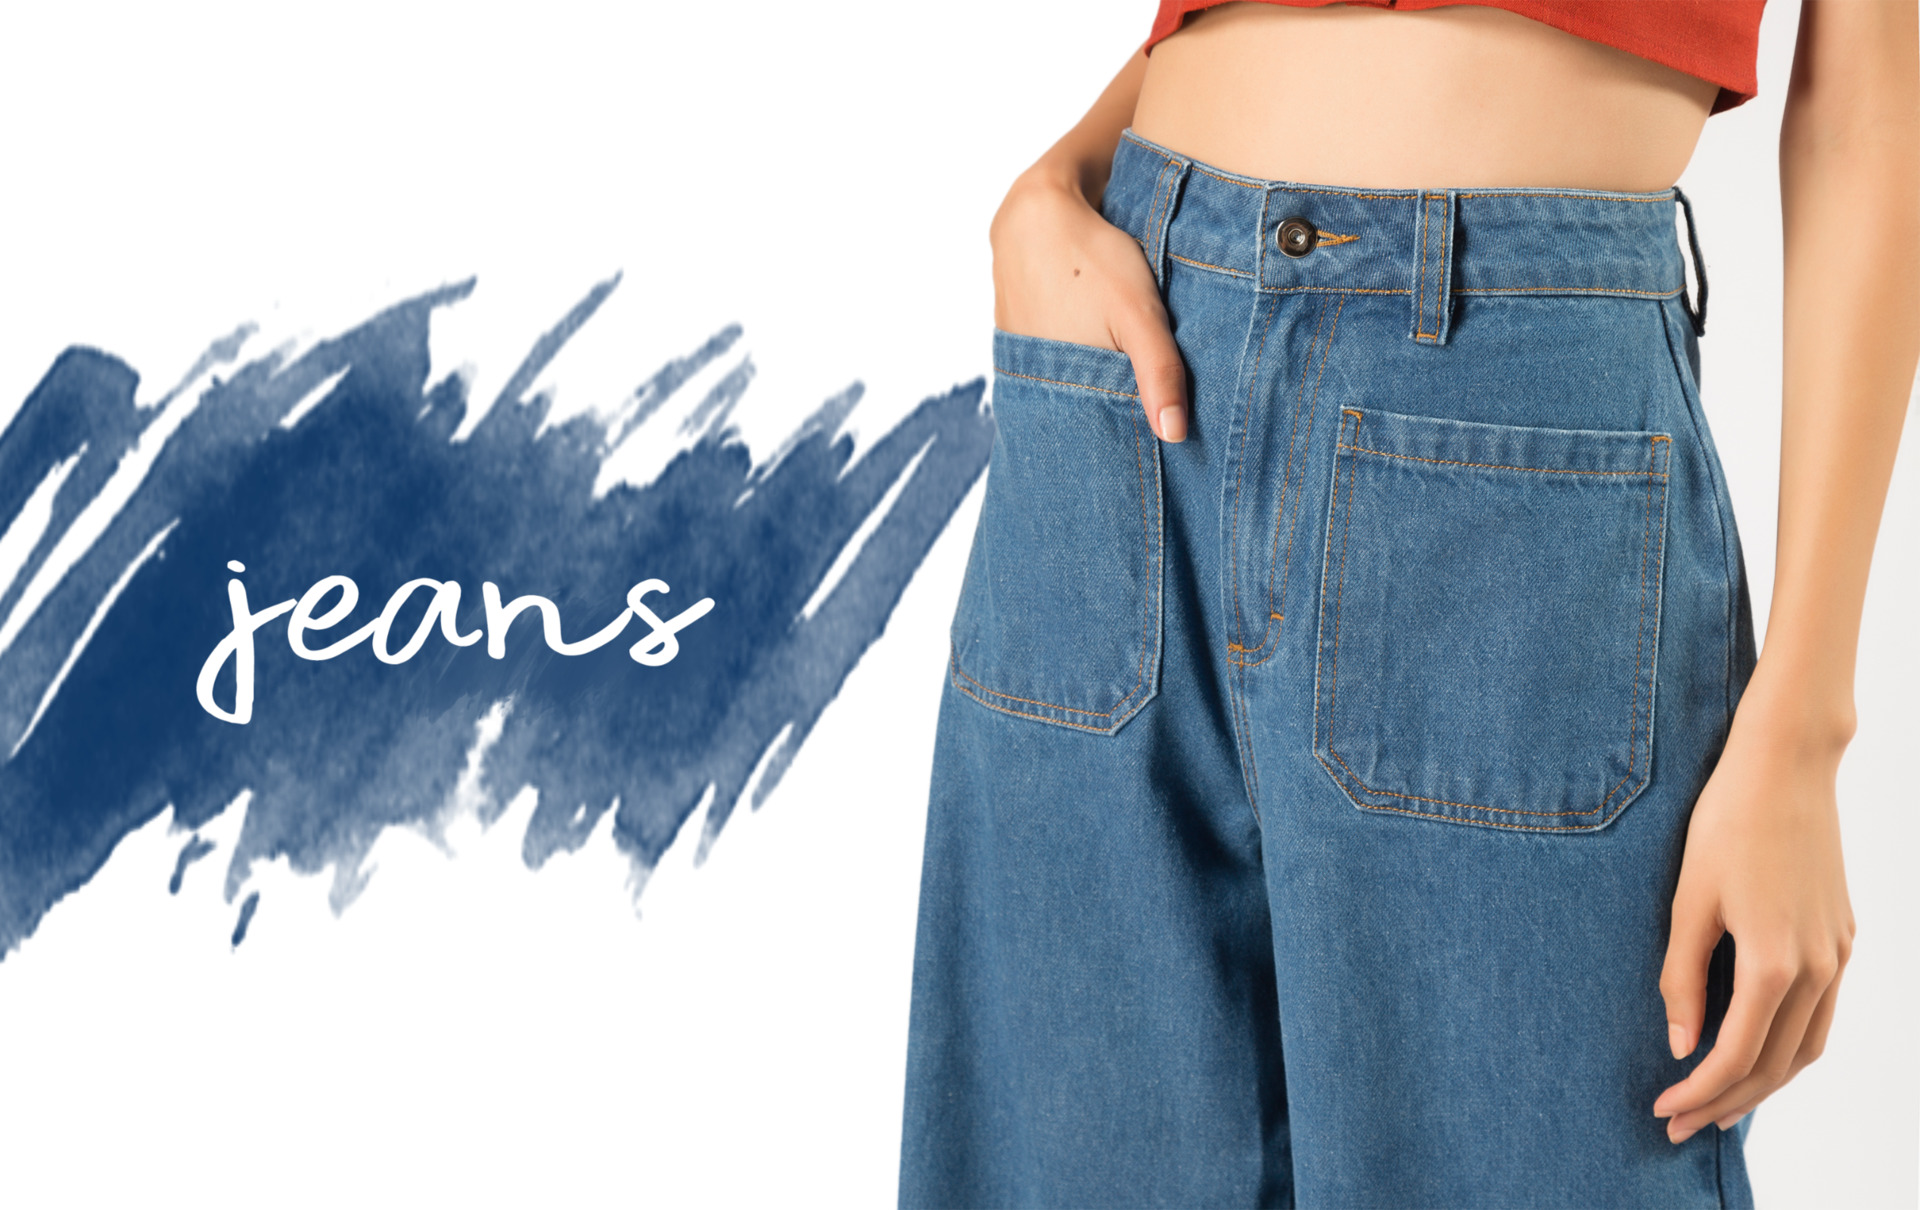 Tudo sobre o jeans | denim - Se apaixone por essas peças coringas tão queridas